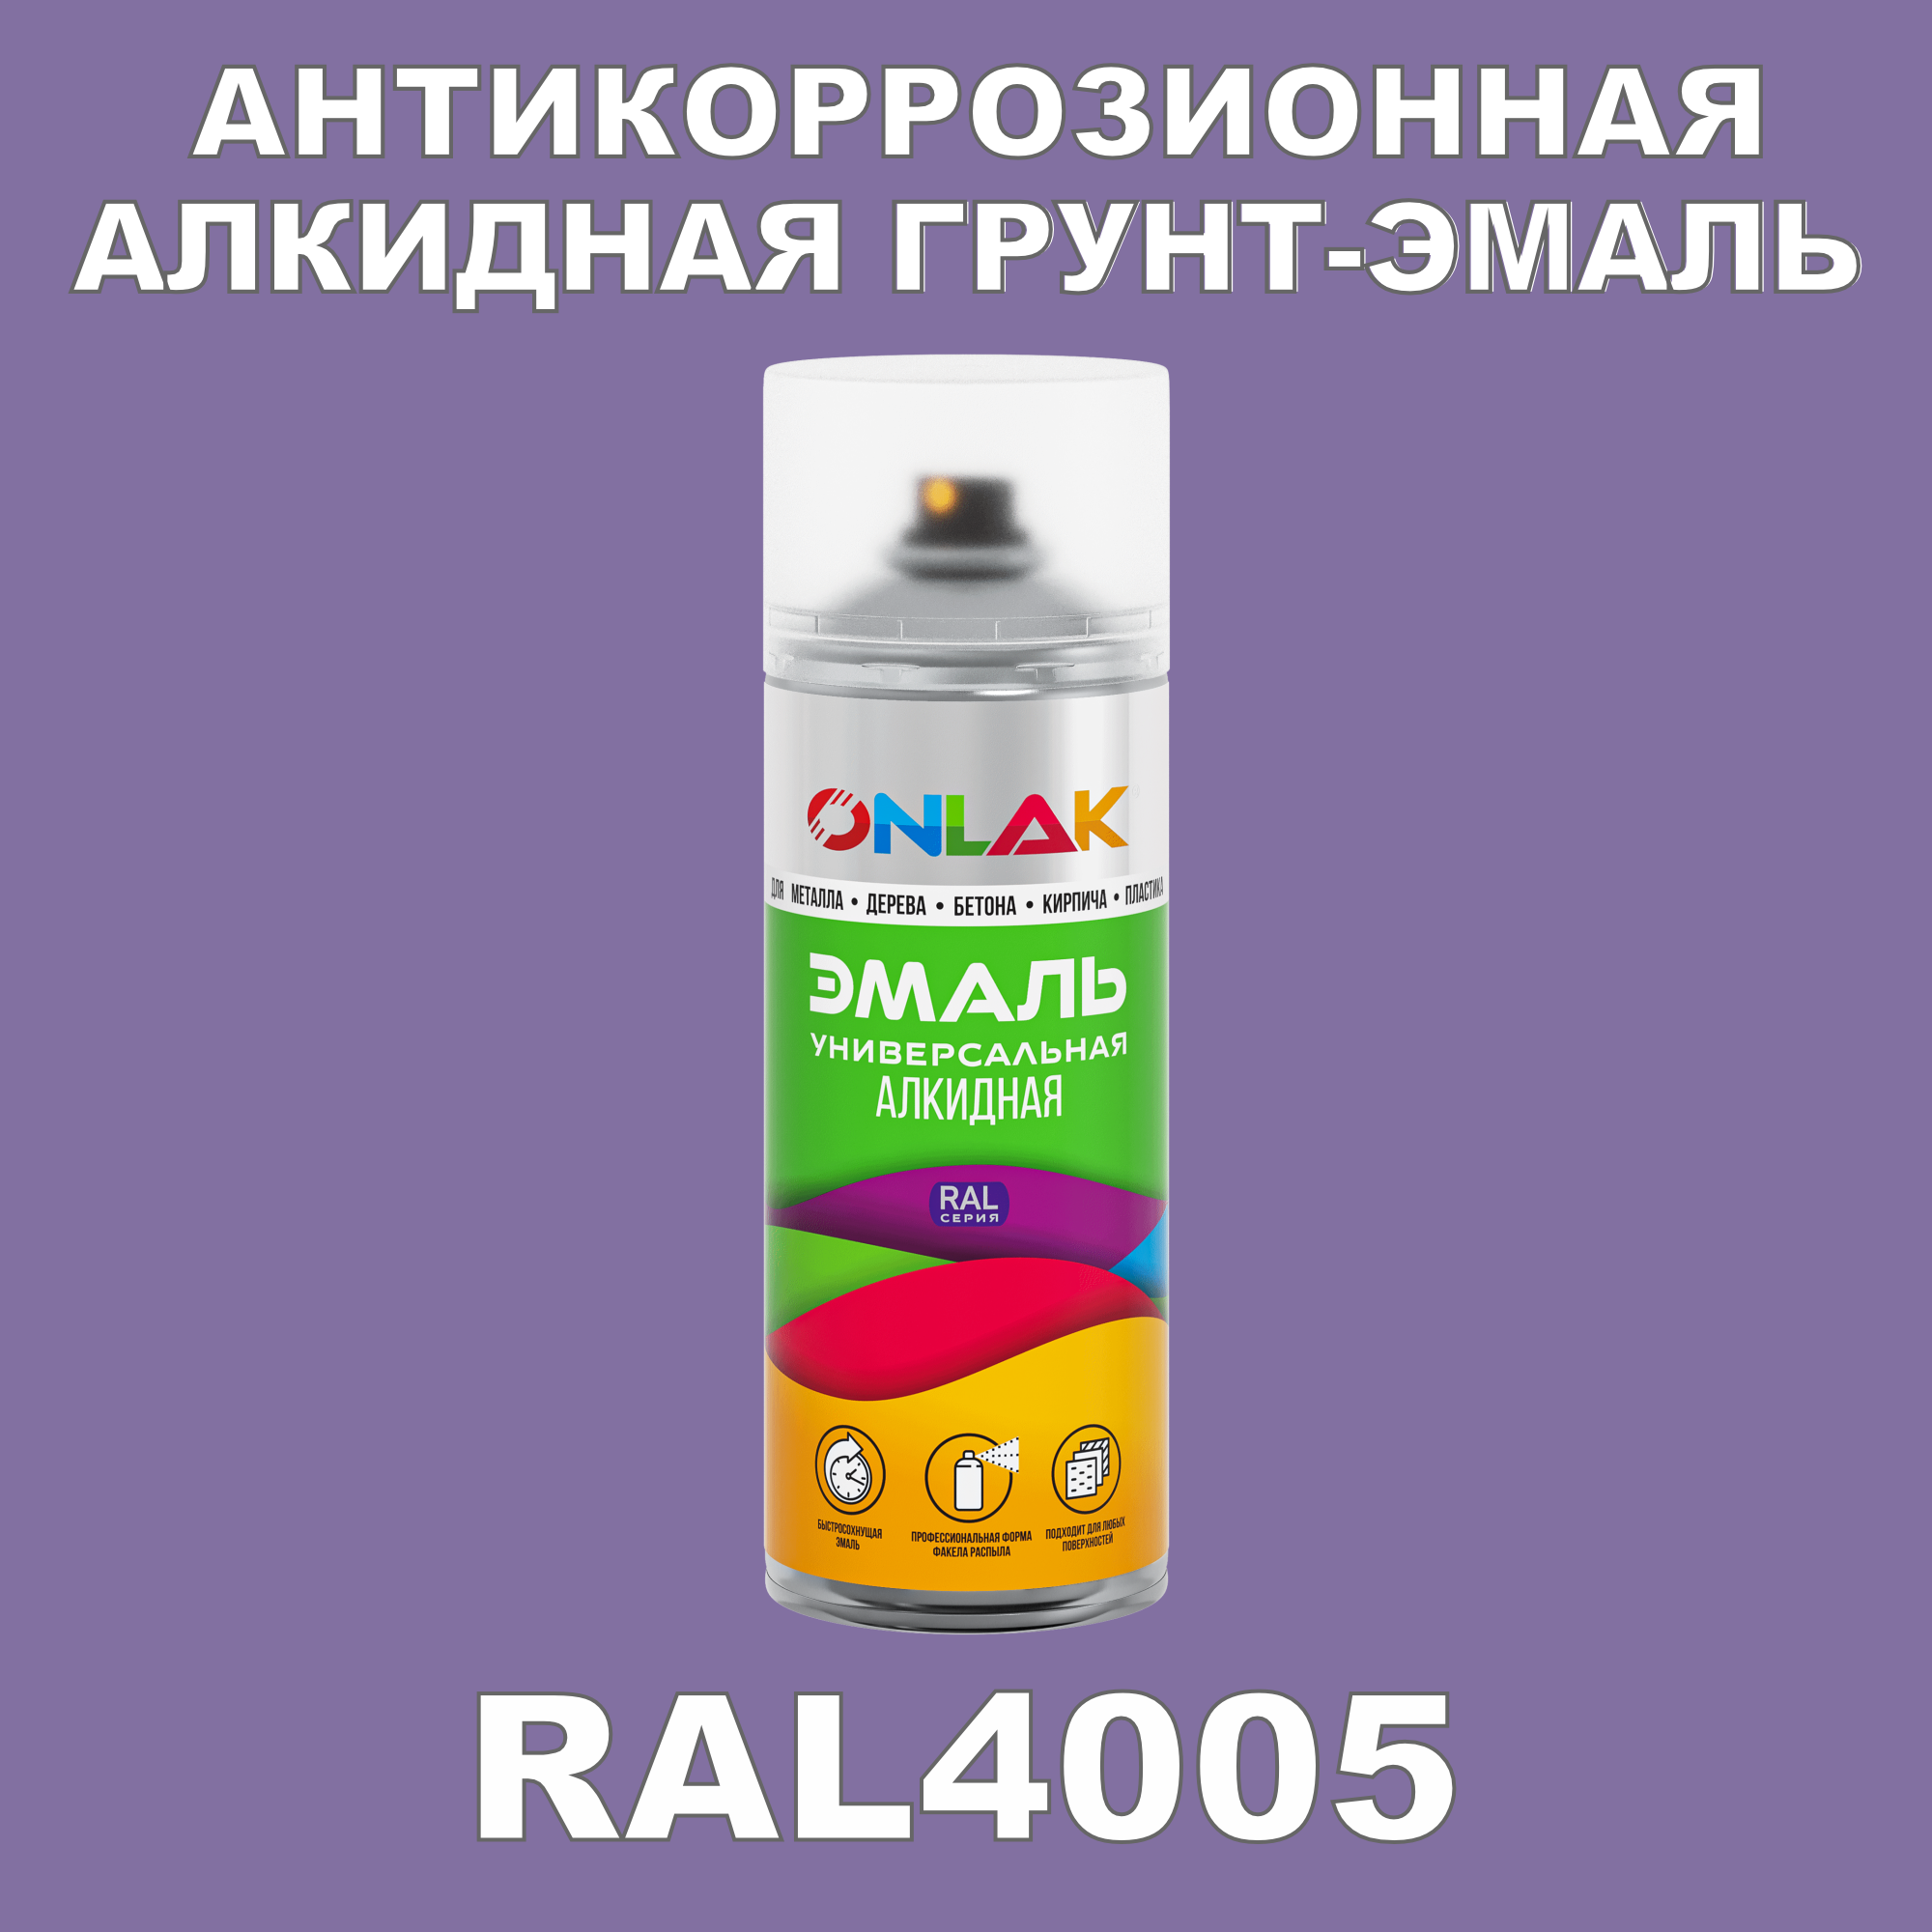 Антикоррозионная грунт-эмаль ONLAK RAL 4005,фиолетовый,662 мл